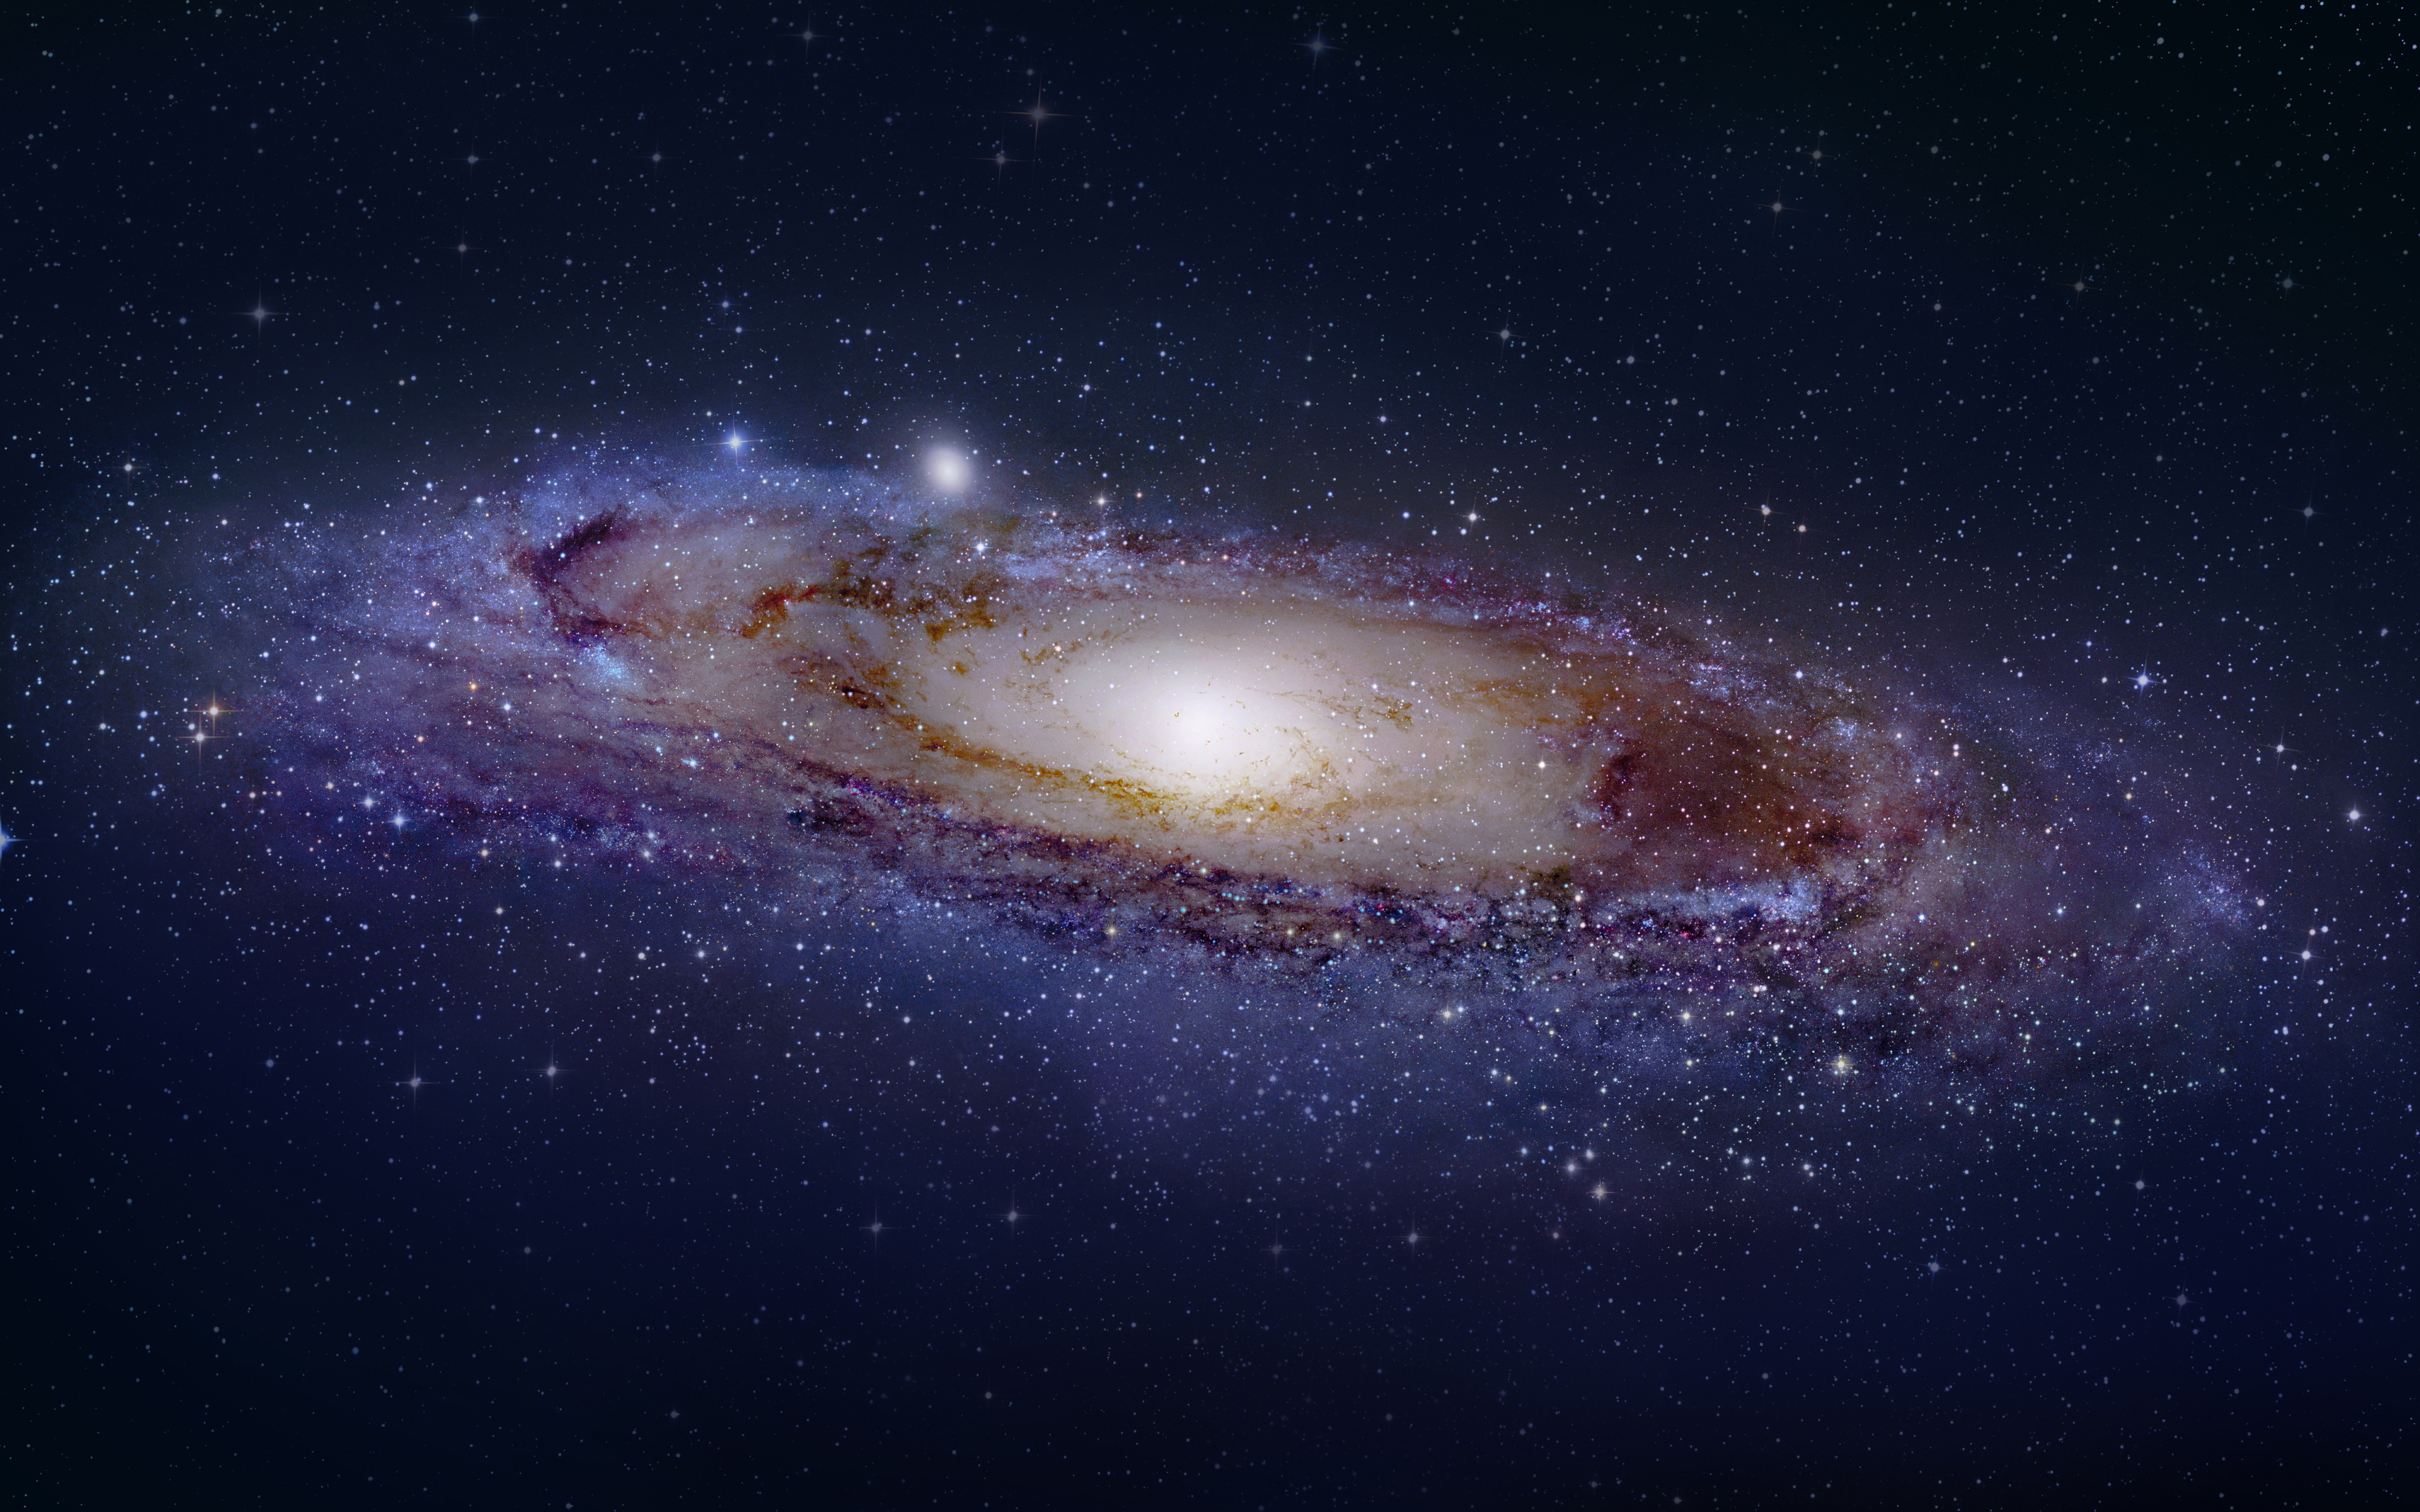 universo wallpaper,galaxis,spiralgalaxie,weltraum,milchstraße,astronomie